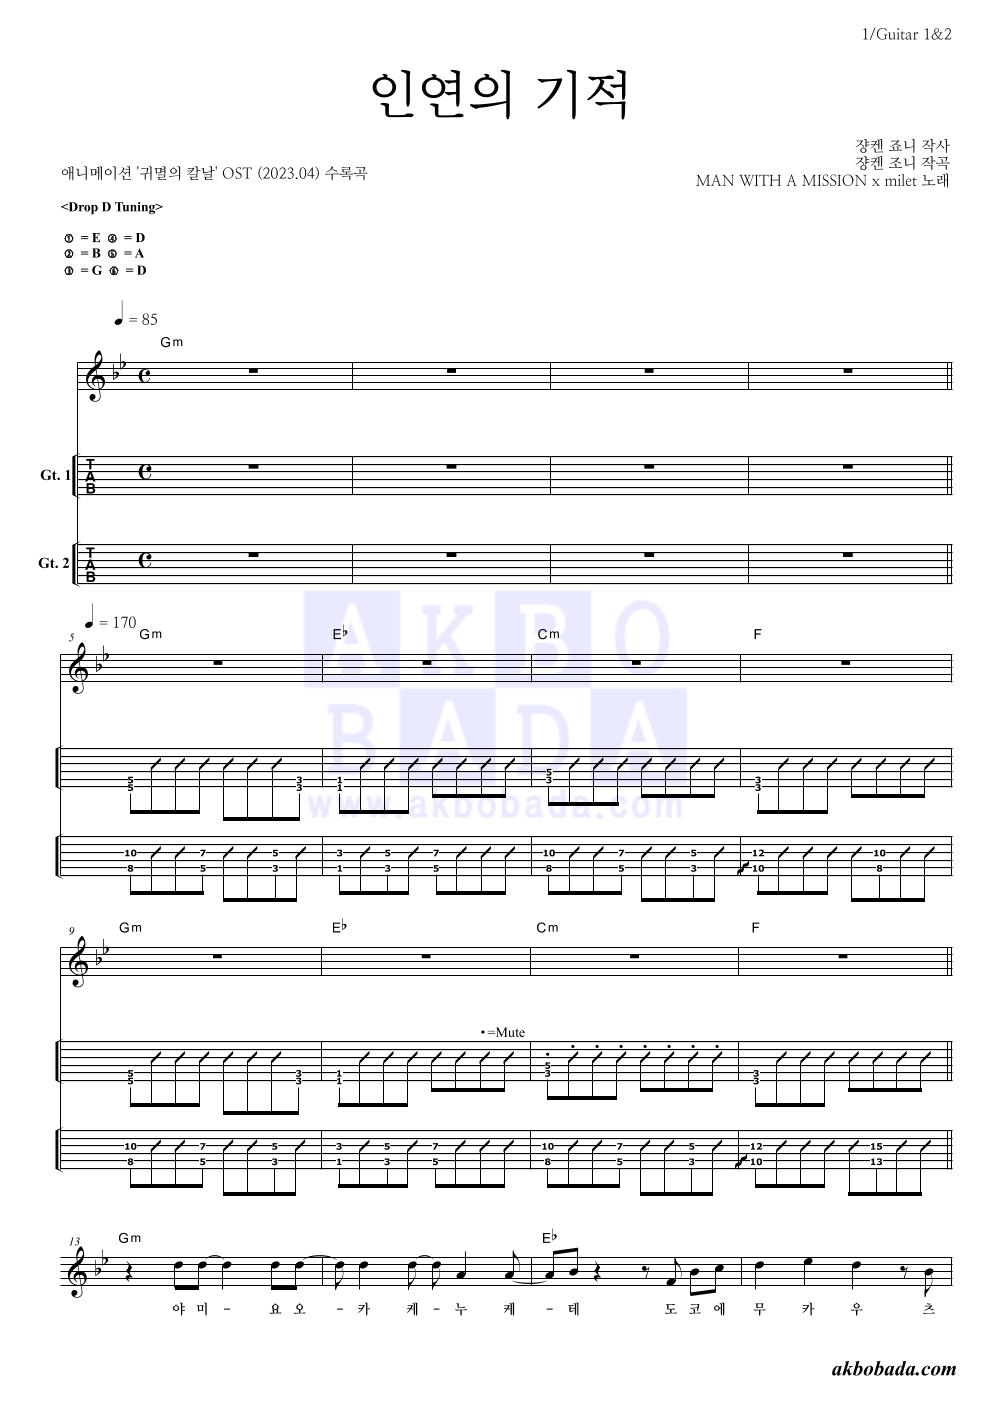 귀멸의 칼날 OST - 인연의 기적 기타(Tab) 악보 